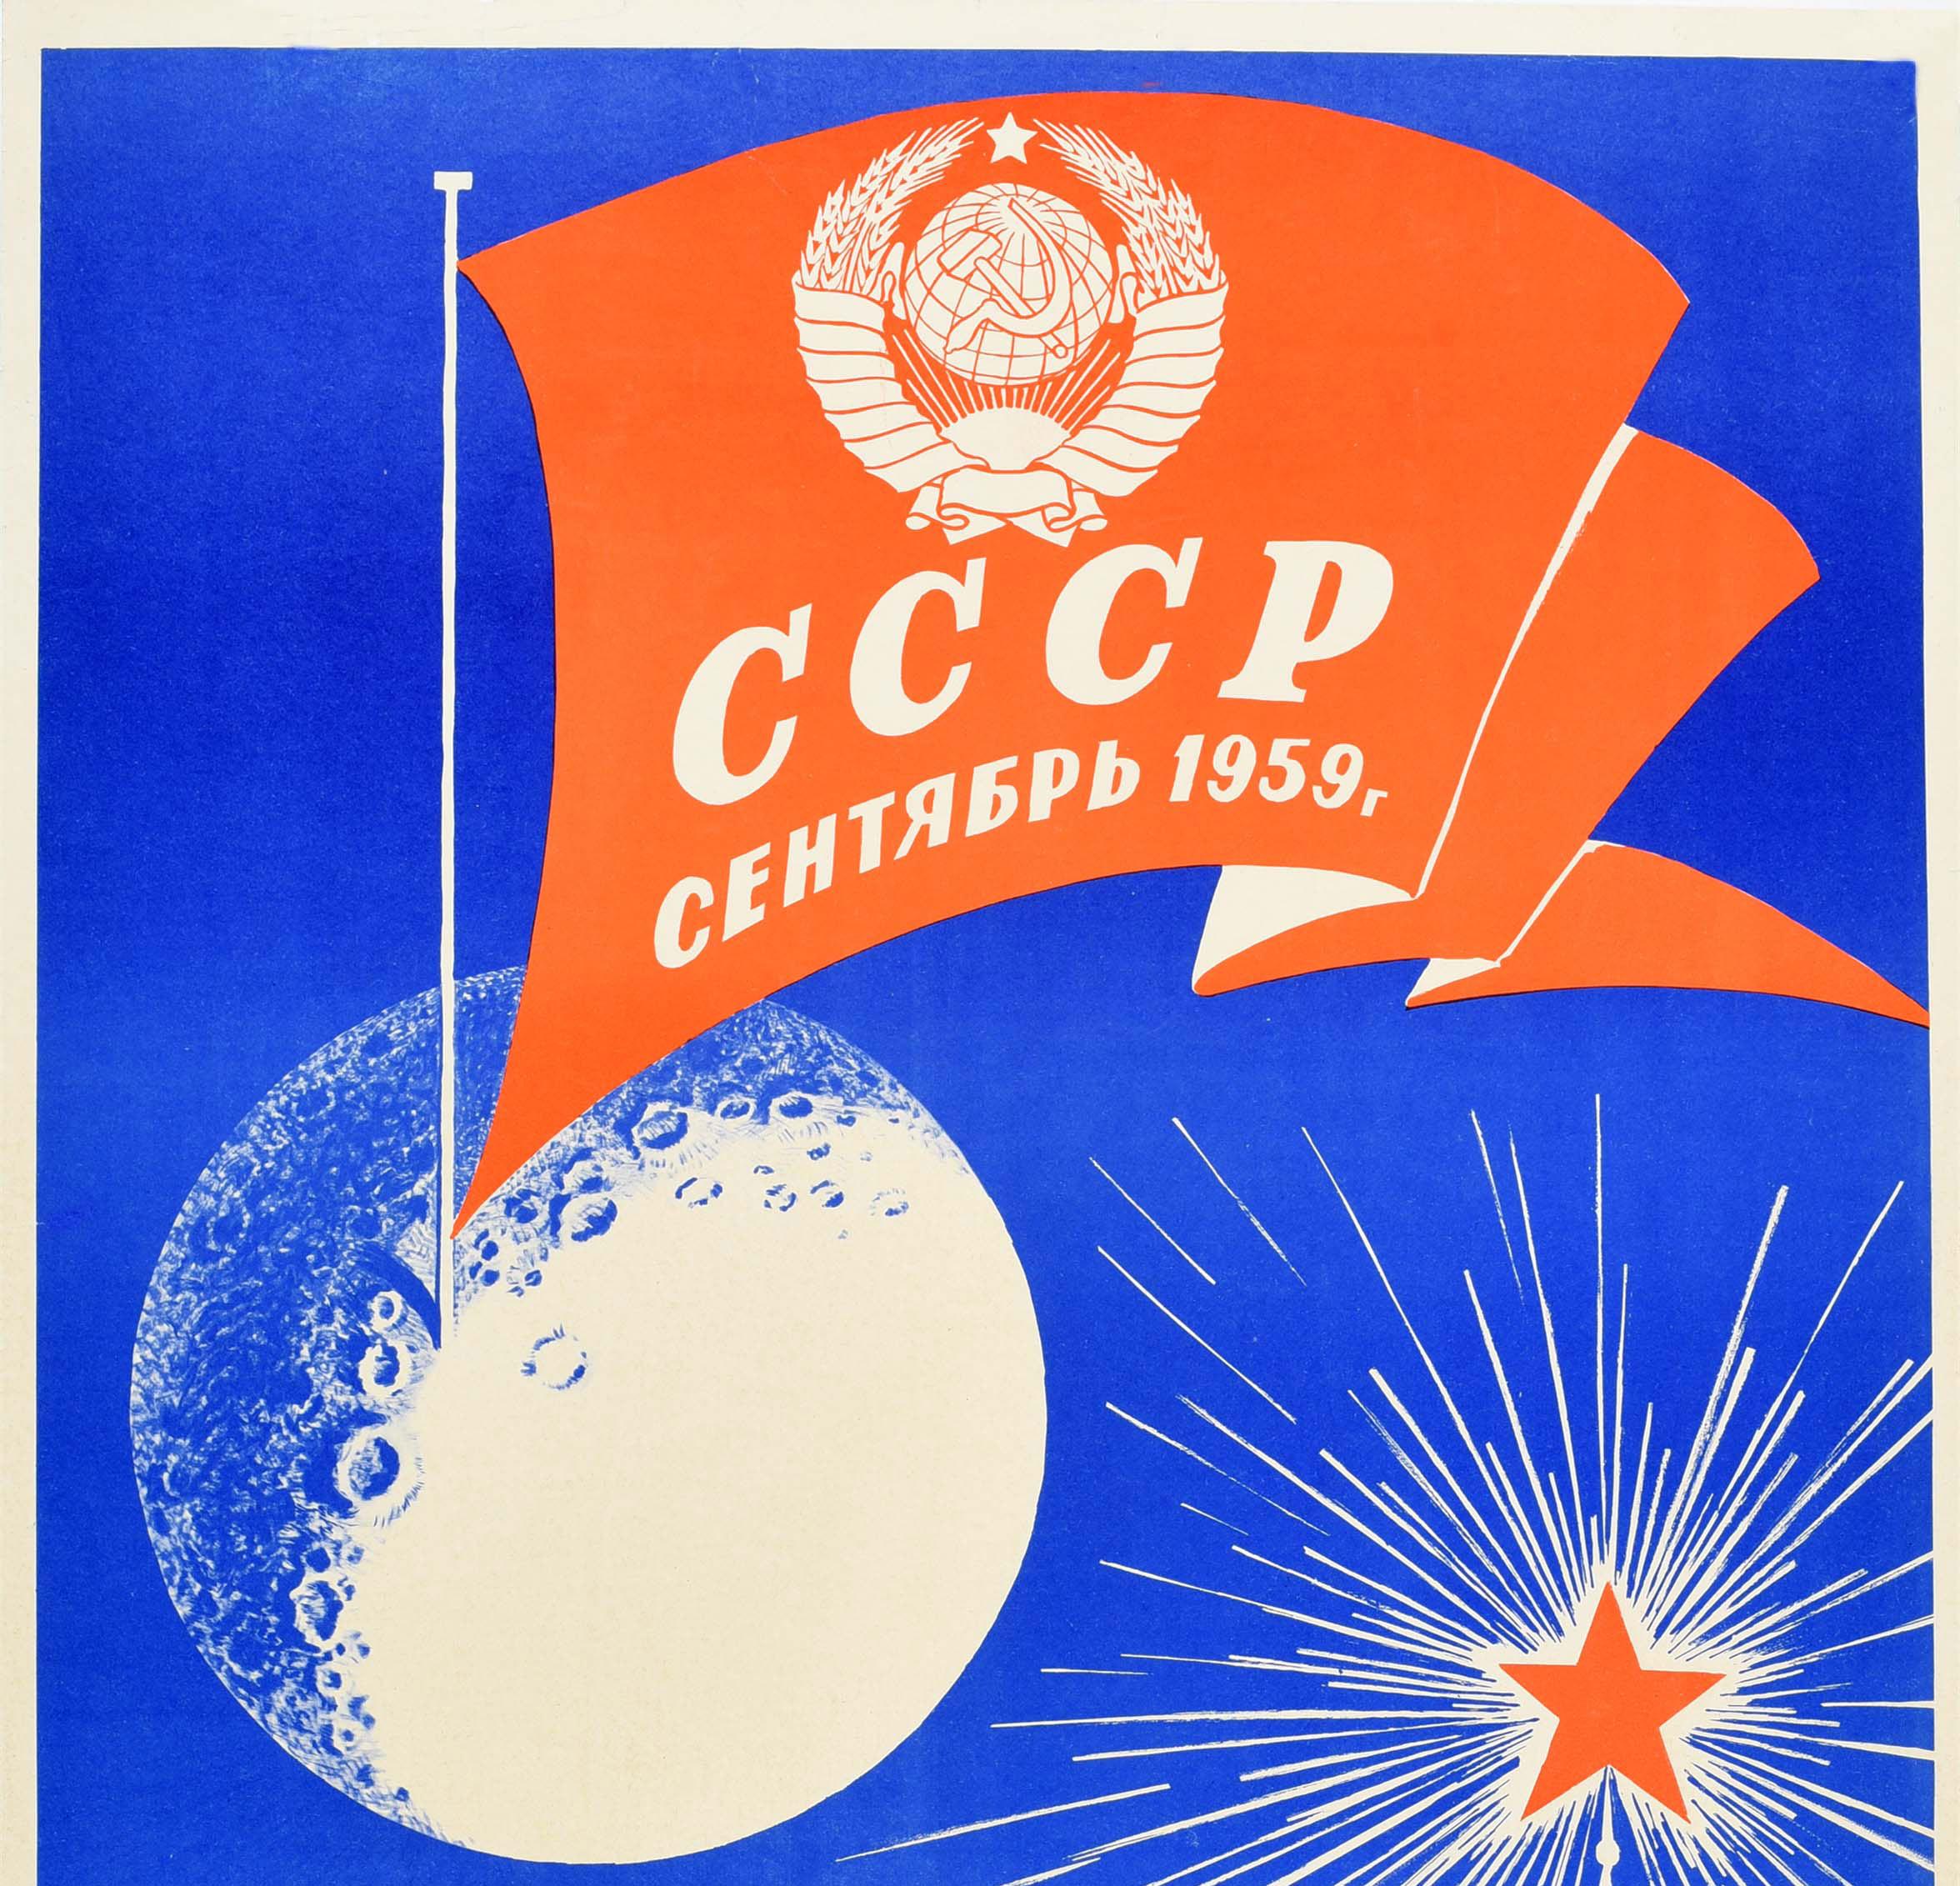 Originales Propagandaplakat aus der Zeit des sowjetischen Weltraumrennens - Union der Sozialistischen Sowjetrepubliken UdSSR September 1959 Im Namen des Friedens und des Fortschritts! / ???? ????????? ???????????????? ????????? ???? ???????? 1959 ??